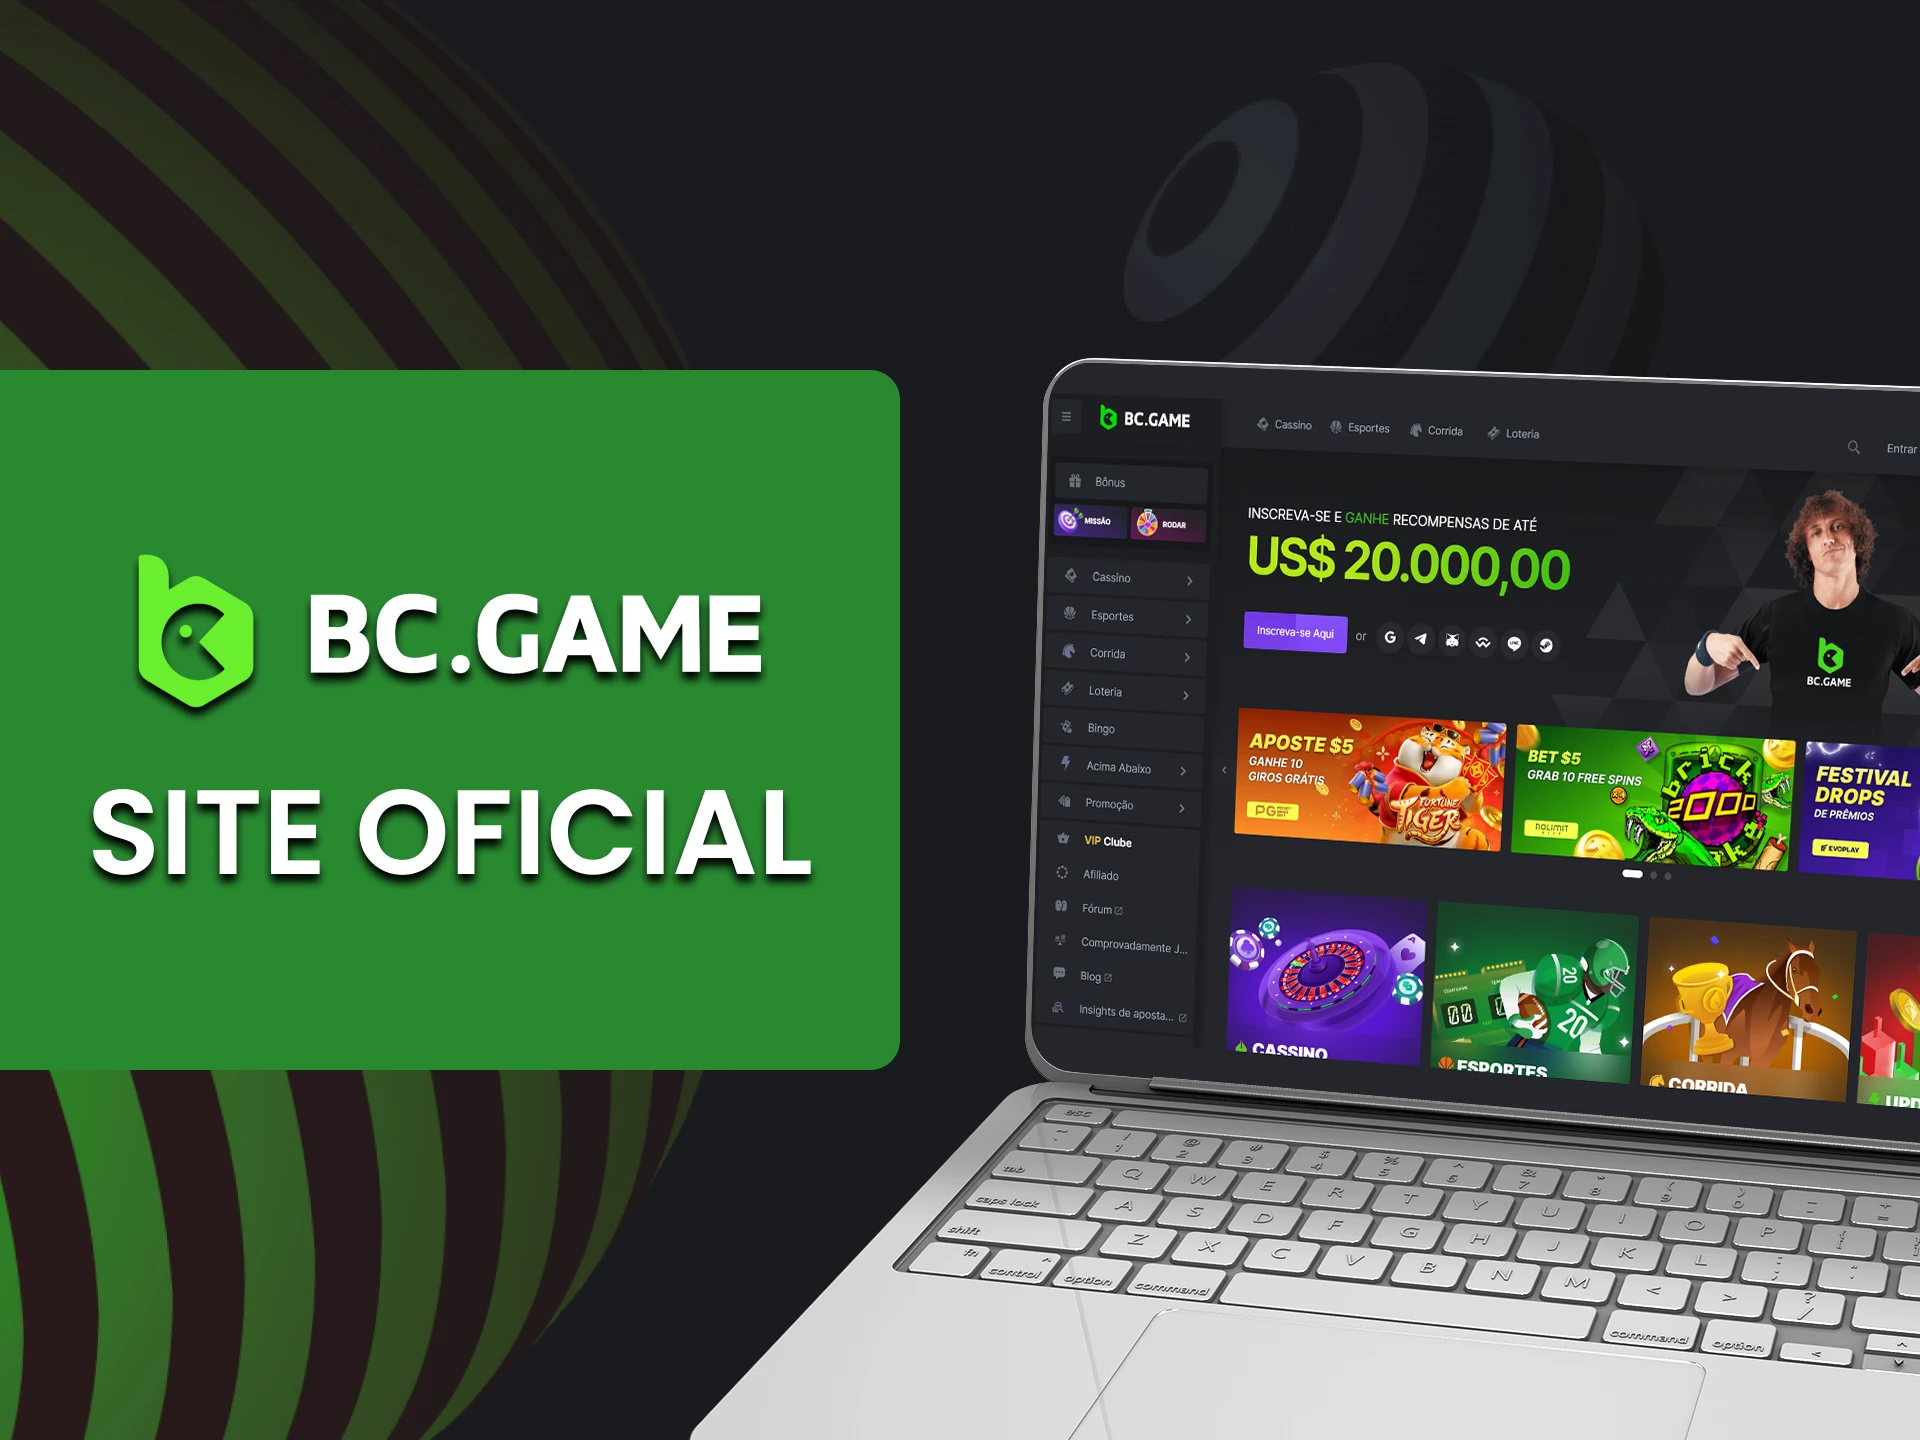 Visite o site oficial do BC Game.